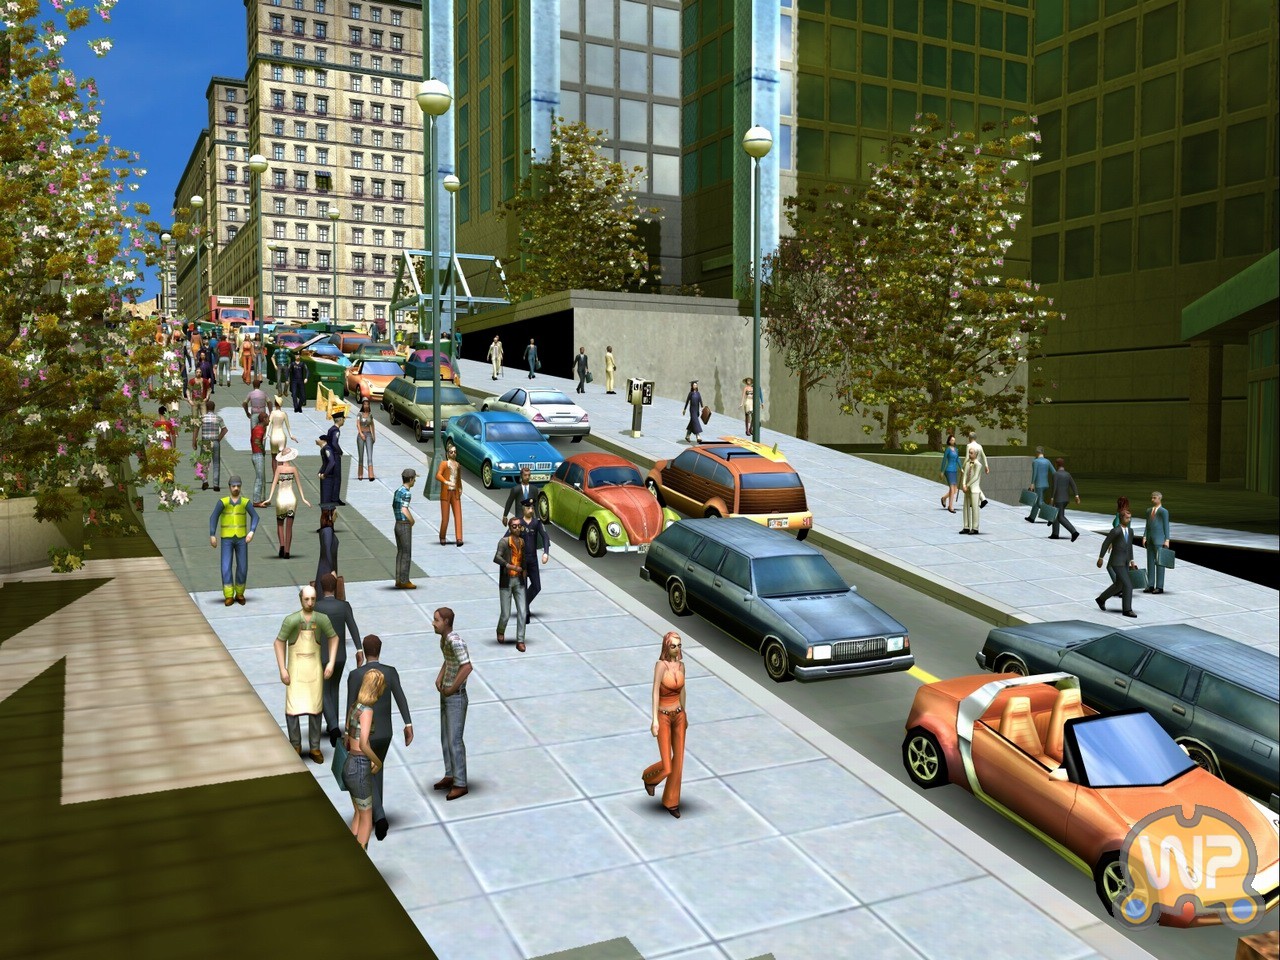 E city life. City Life 2008. City Life: город твоей мечты градостроительные симуляторы. Сити лайф игра 2016. City Life 2008: город, созданный тобой.